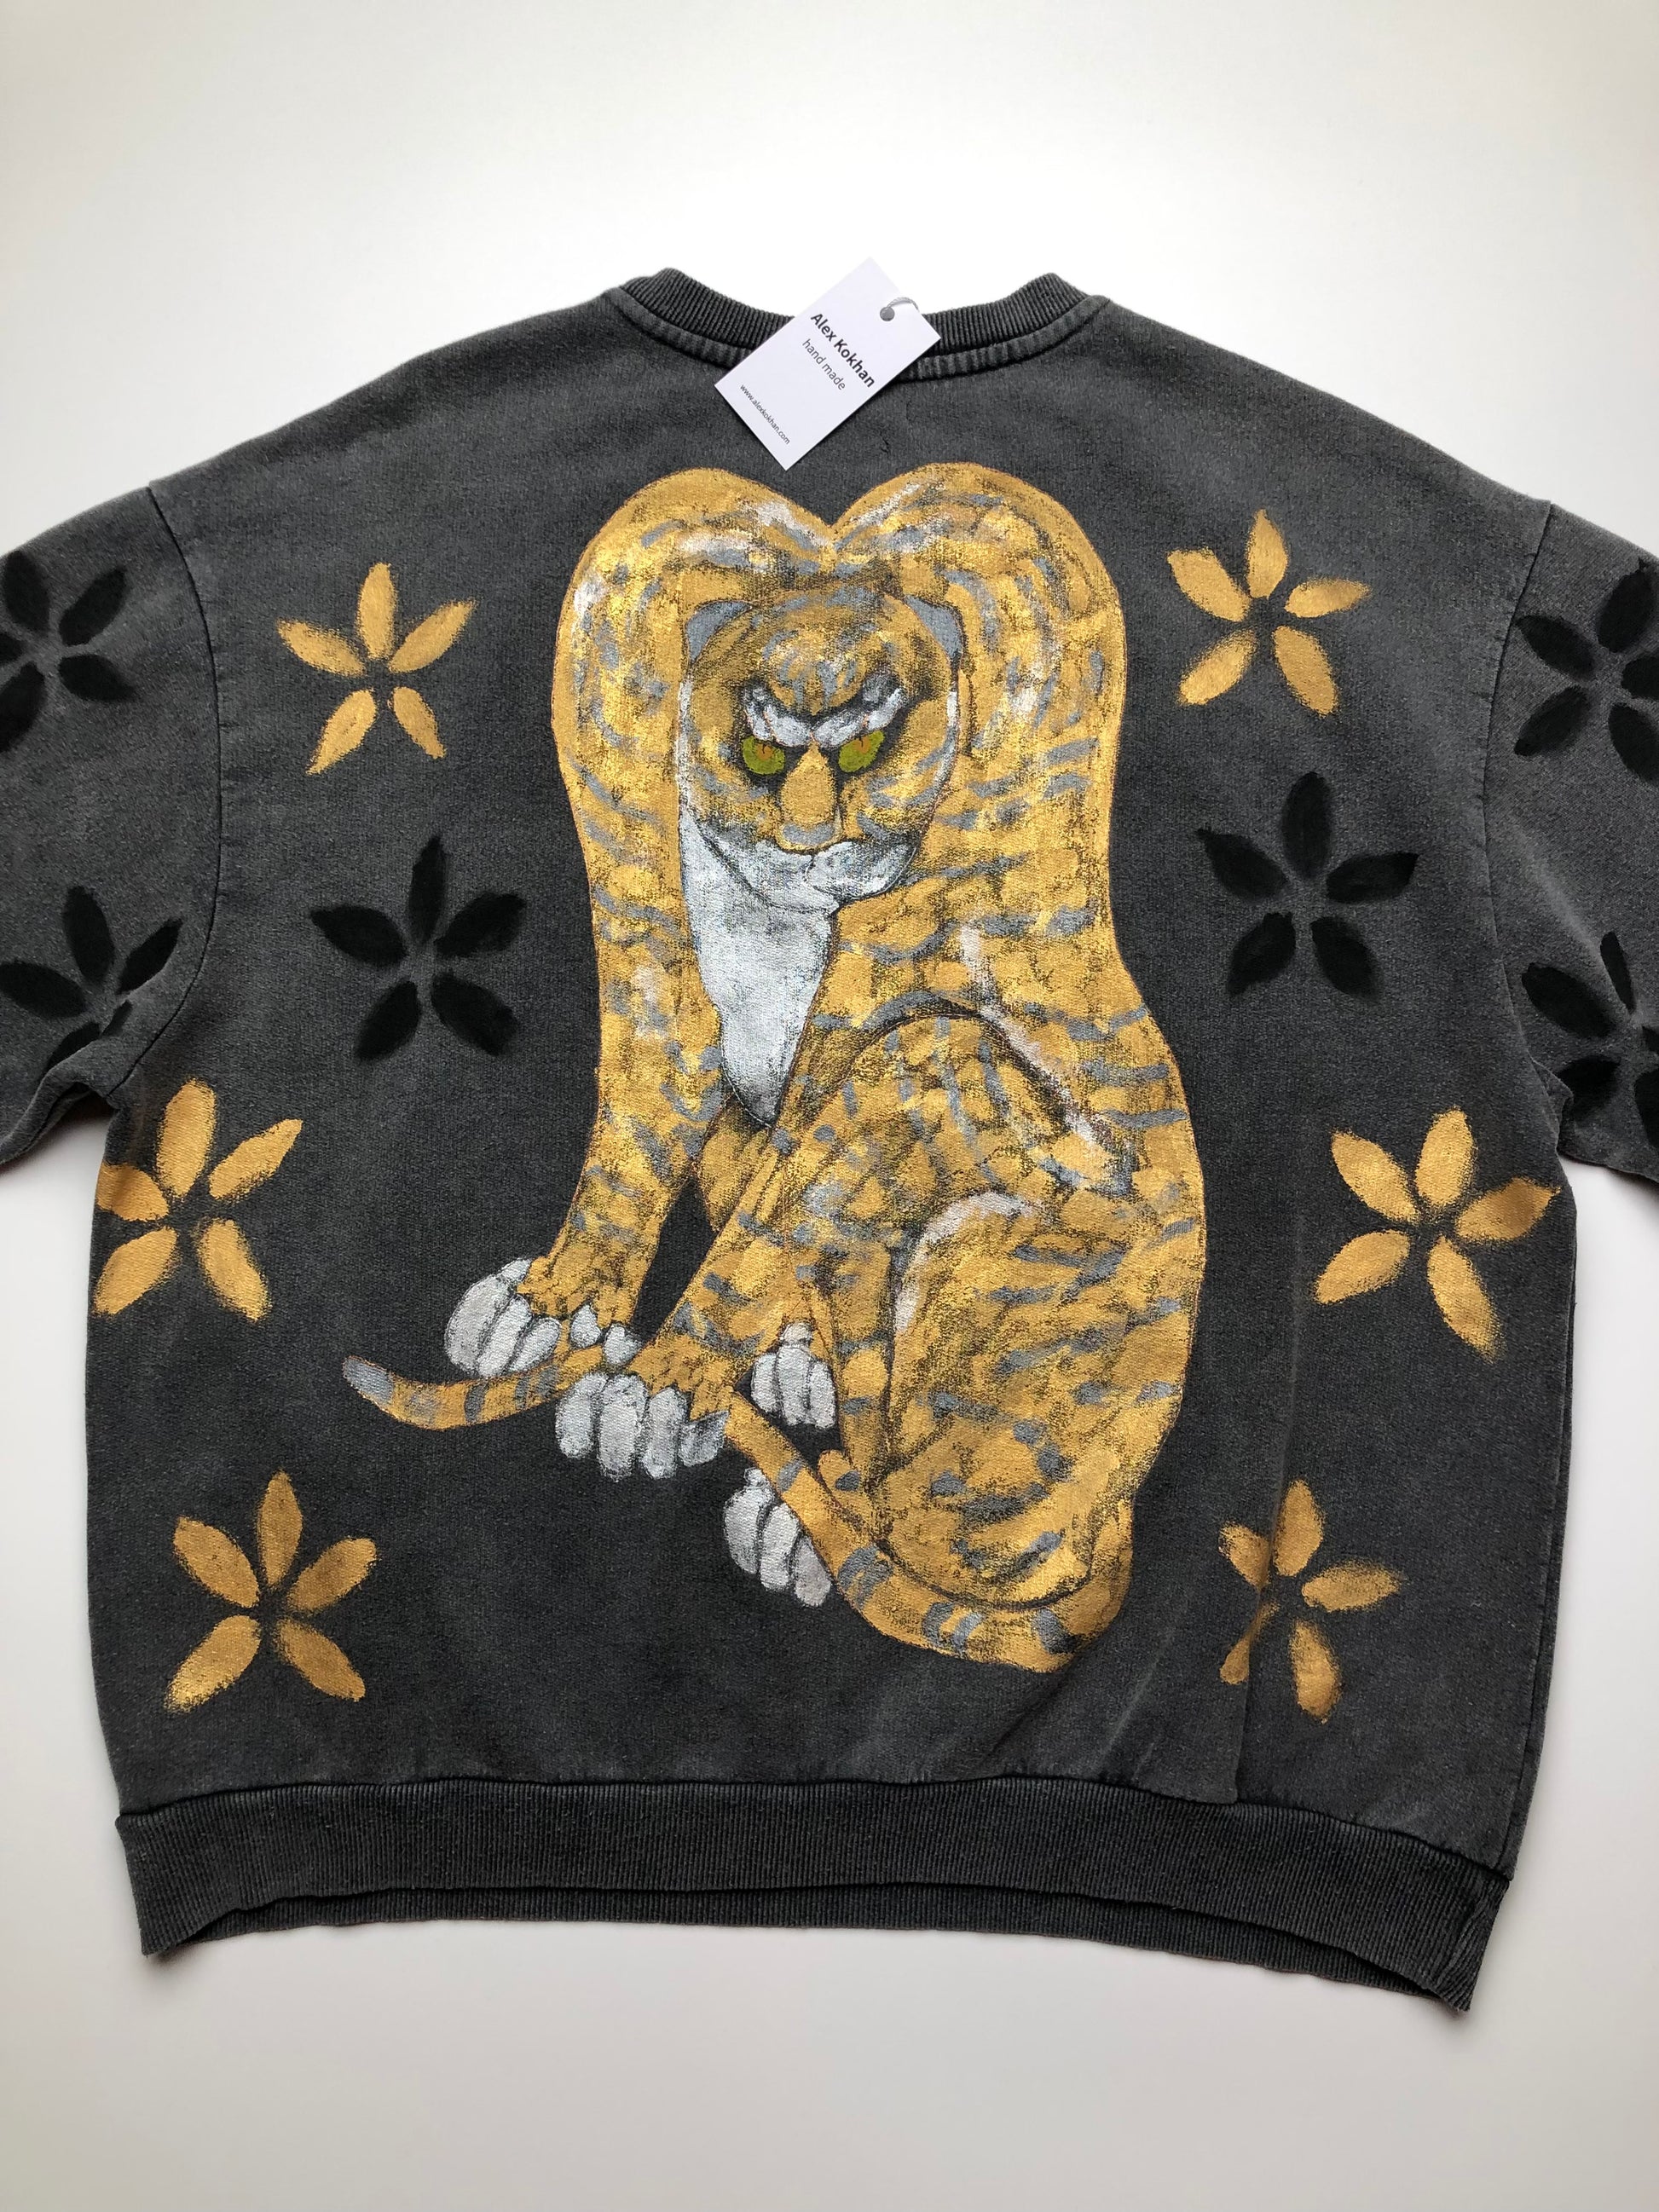 Women's oversized sweatshirt Japanese cat pattern details reverse side